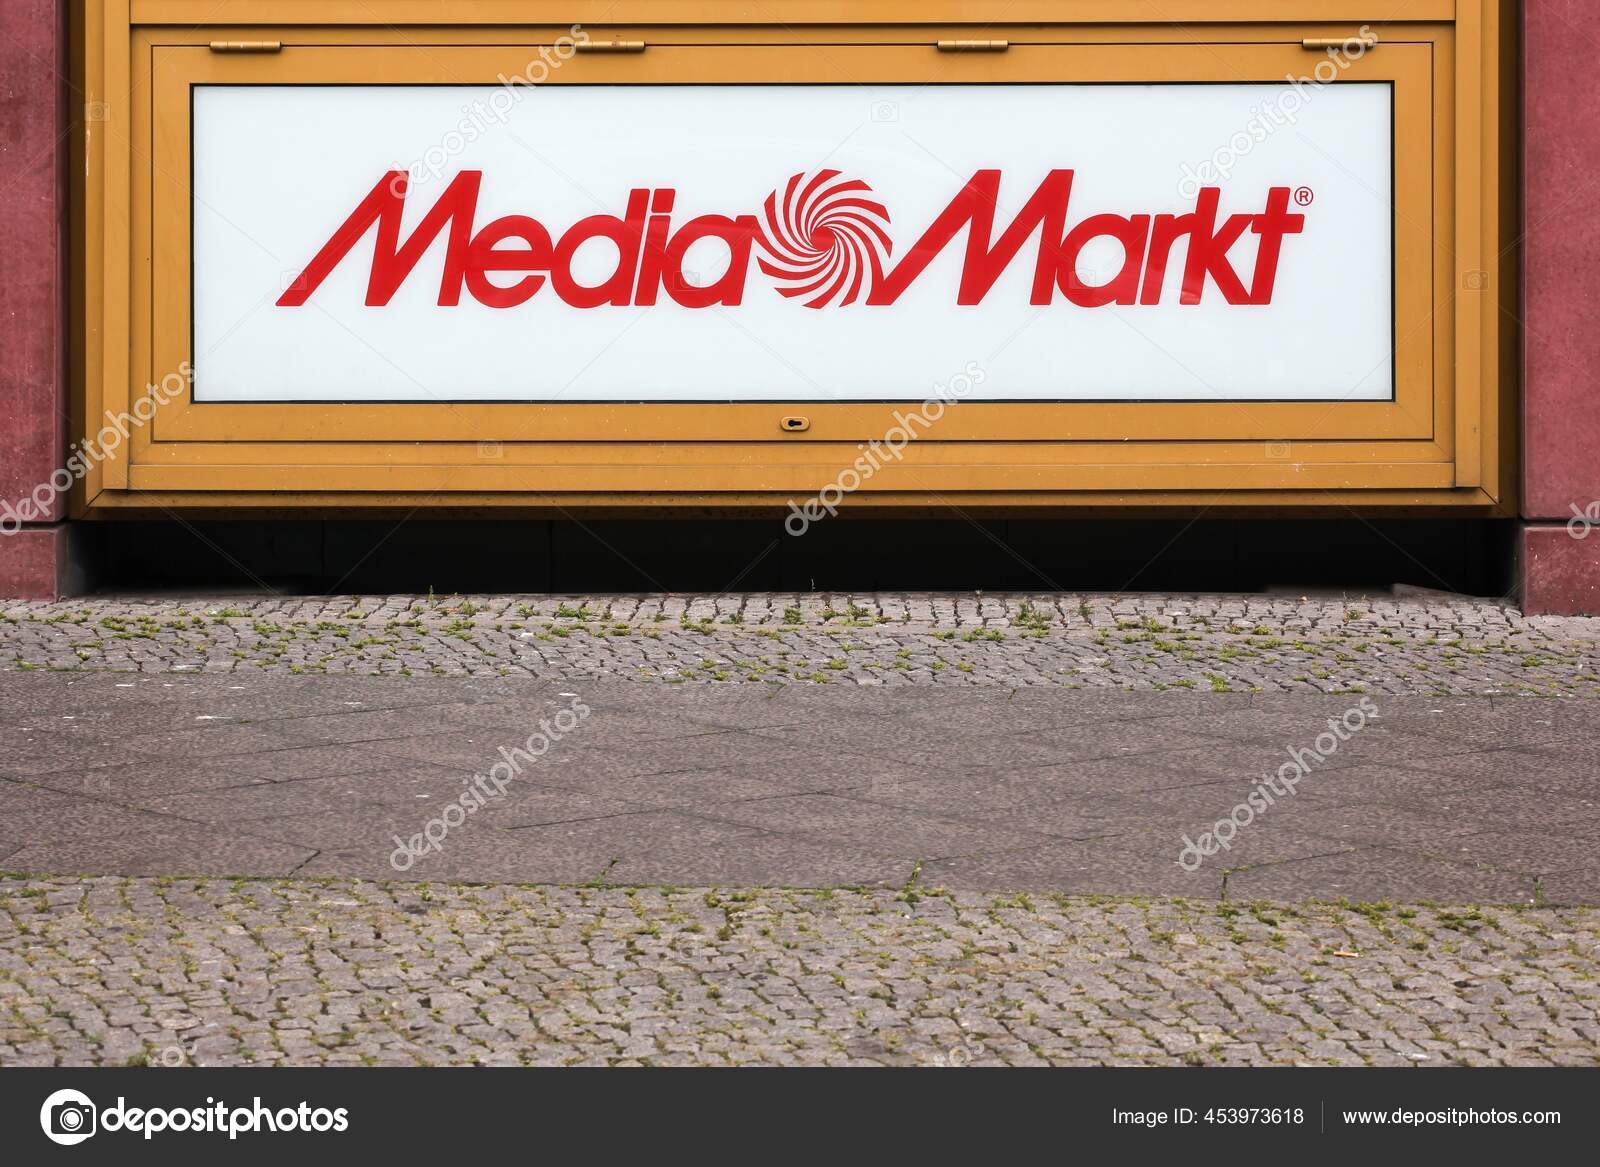 Gothenburg, Sweden - April 25 2020: Logo of Media Markt on a